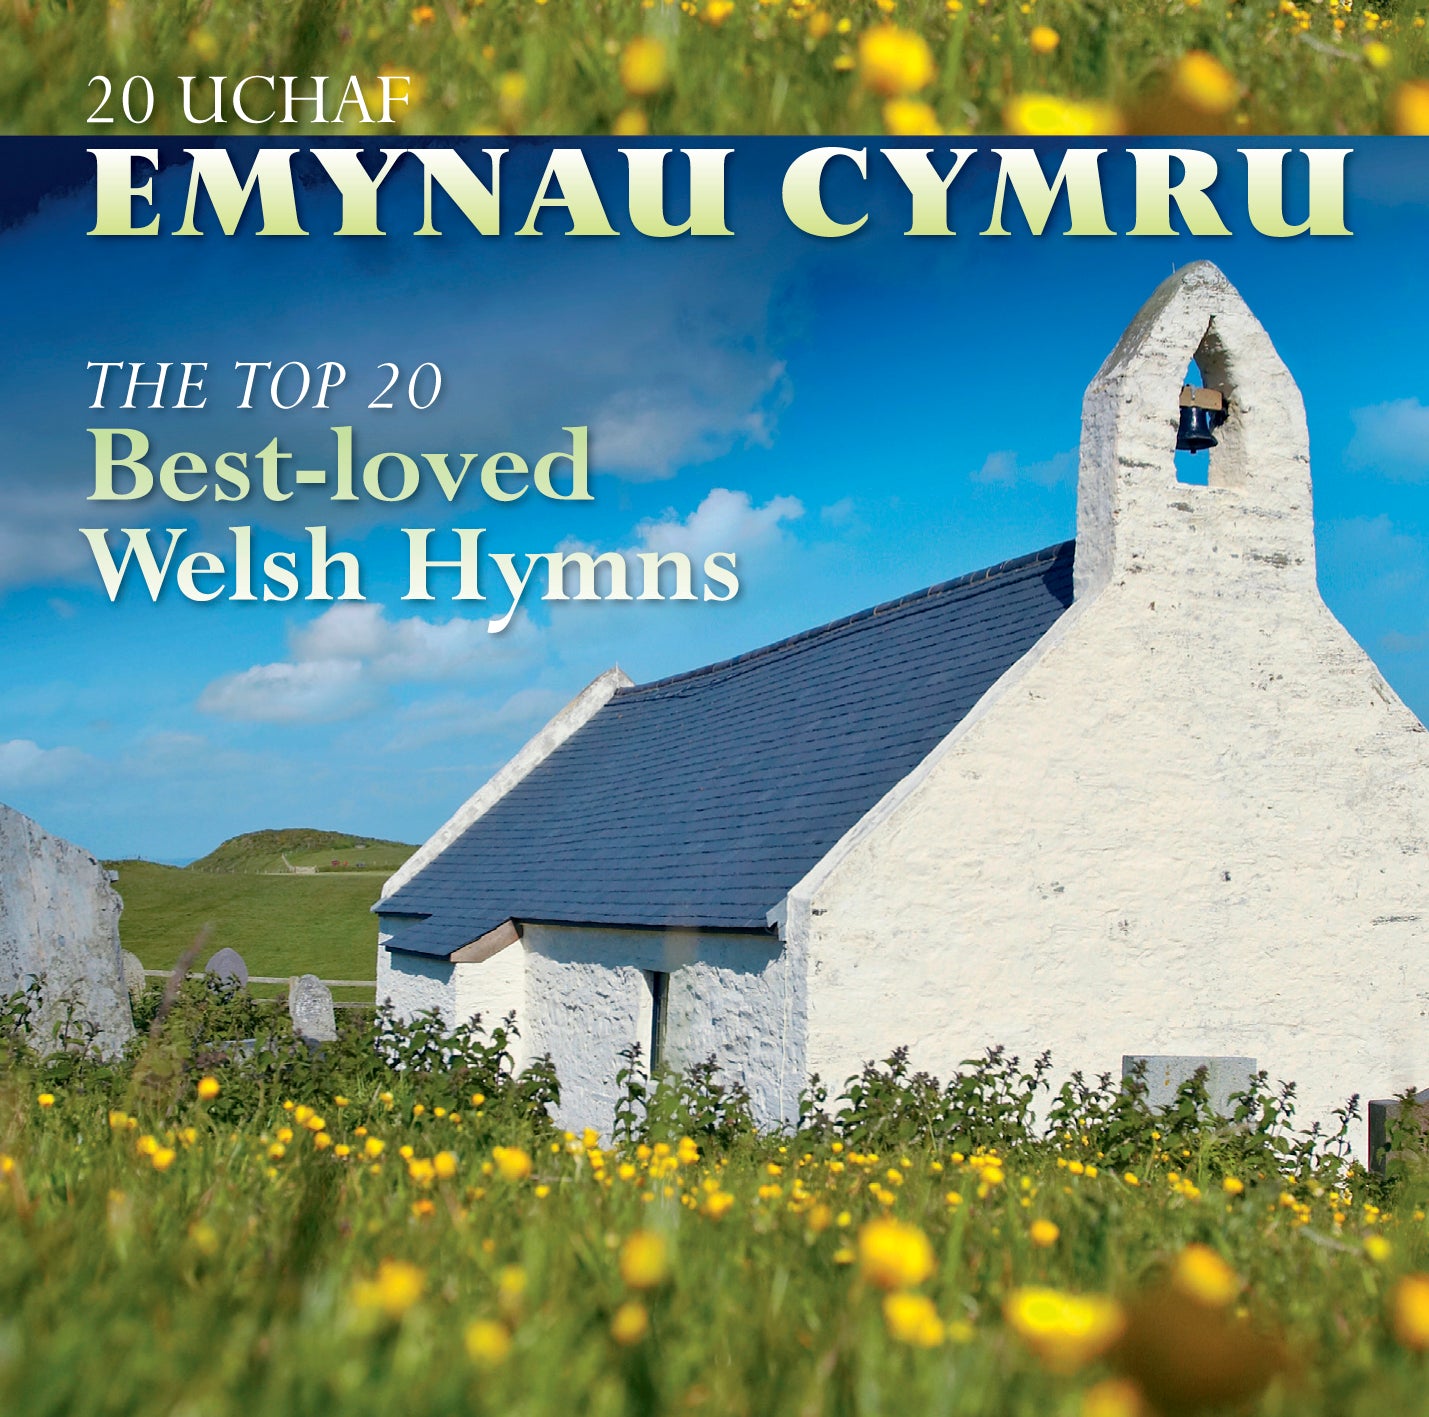 20 Uchaf Emynau Cymru 